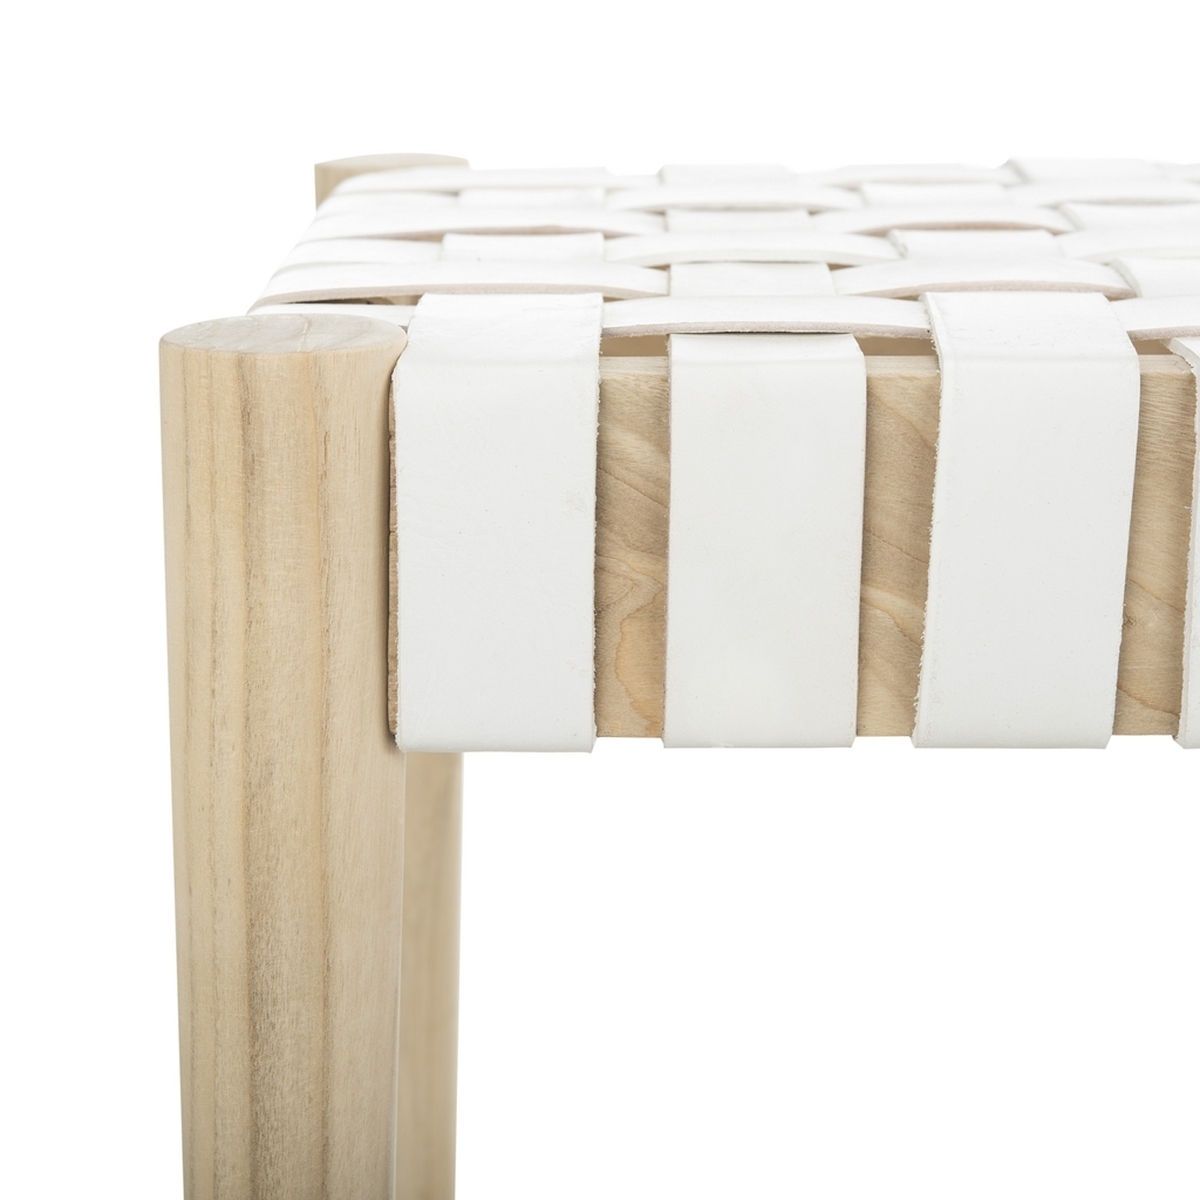 Amalia Leather Weave Bench, White & Natural - Image 3